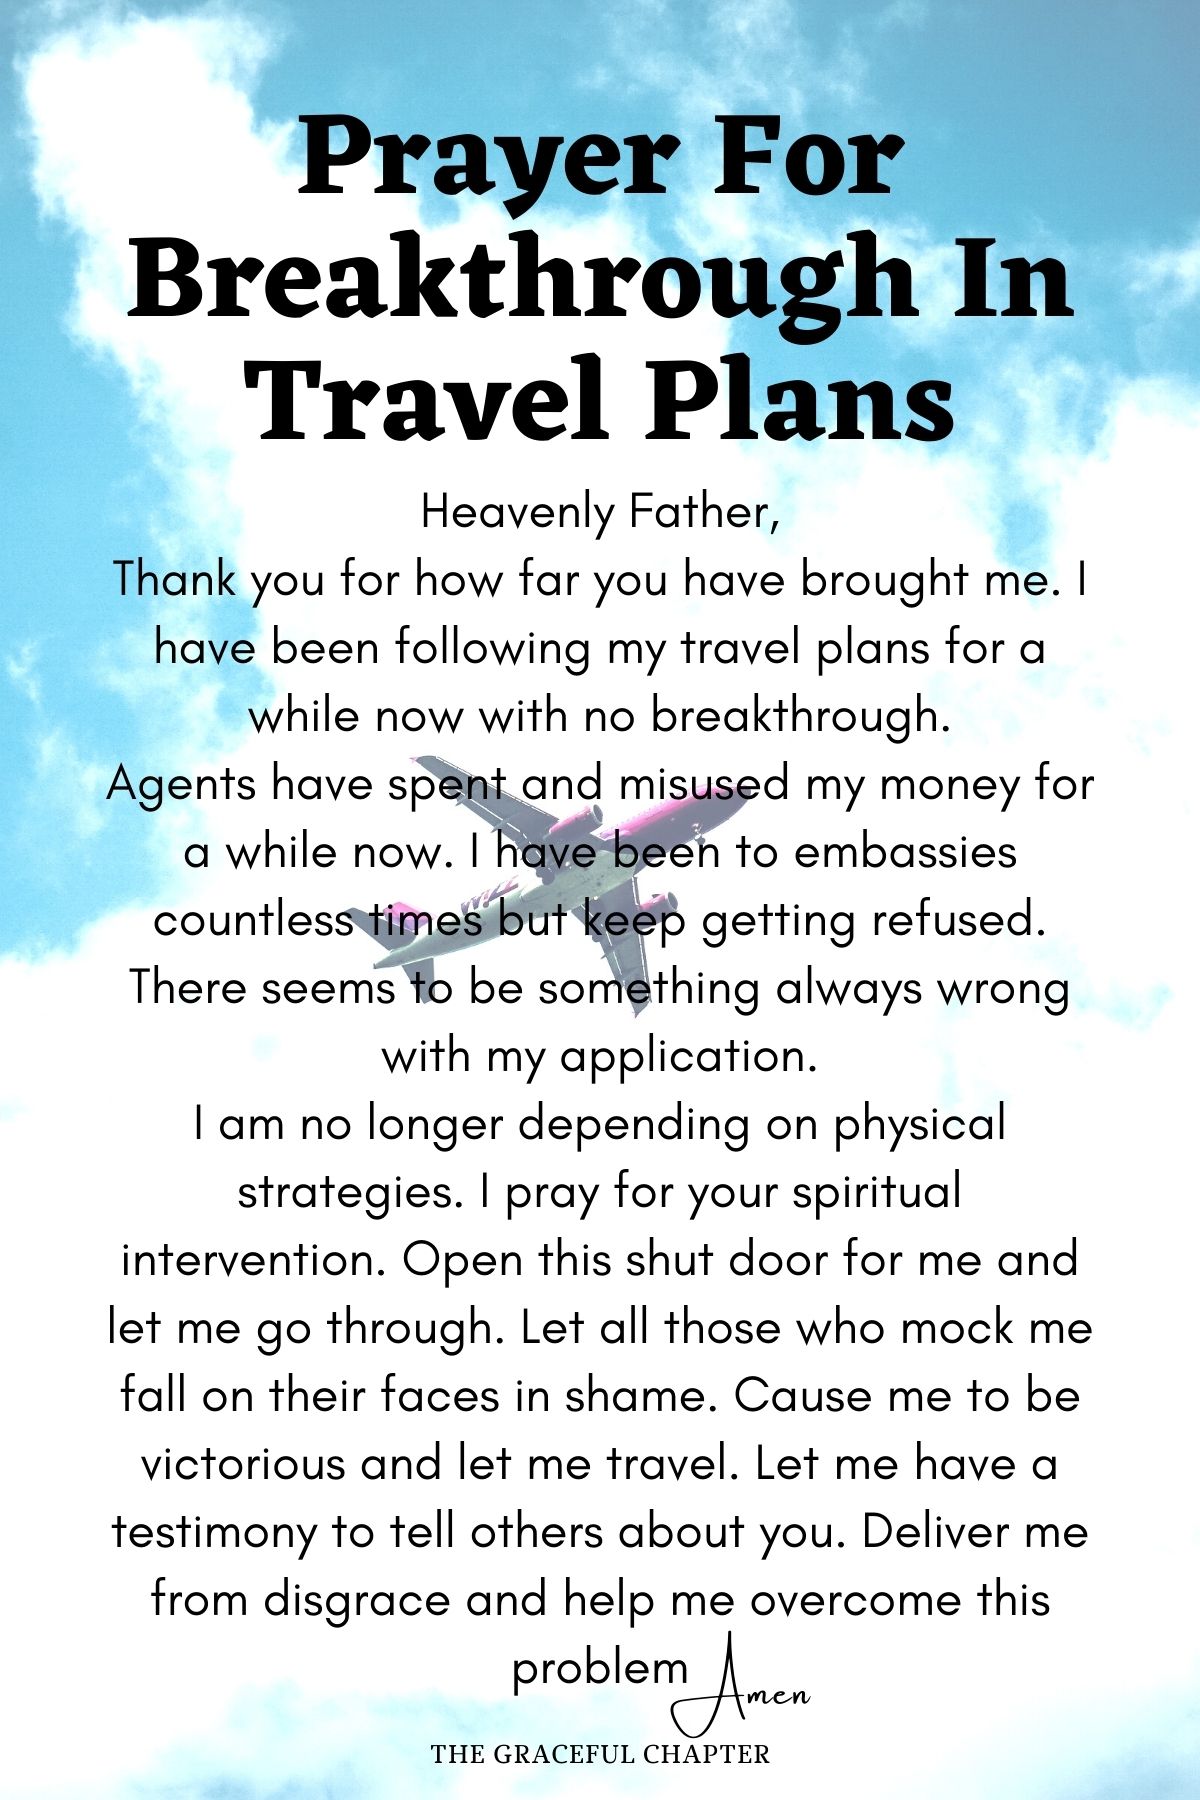 Prayer for breakthrough in travel plans